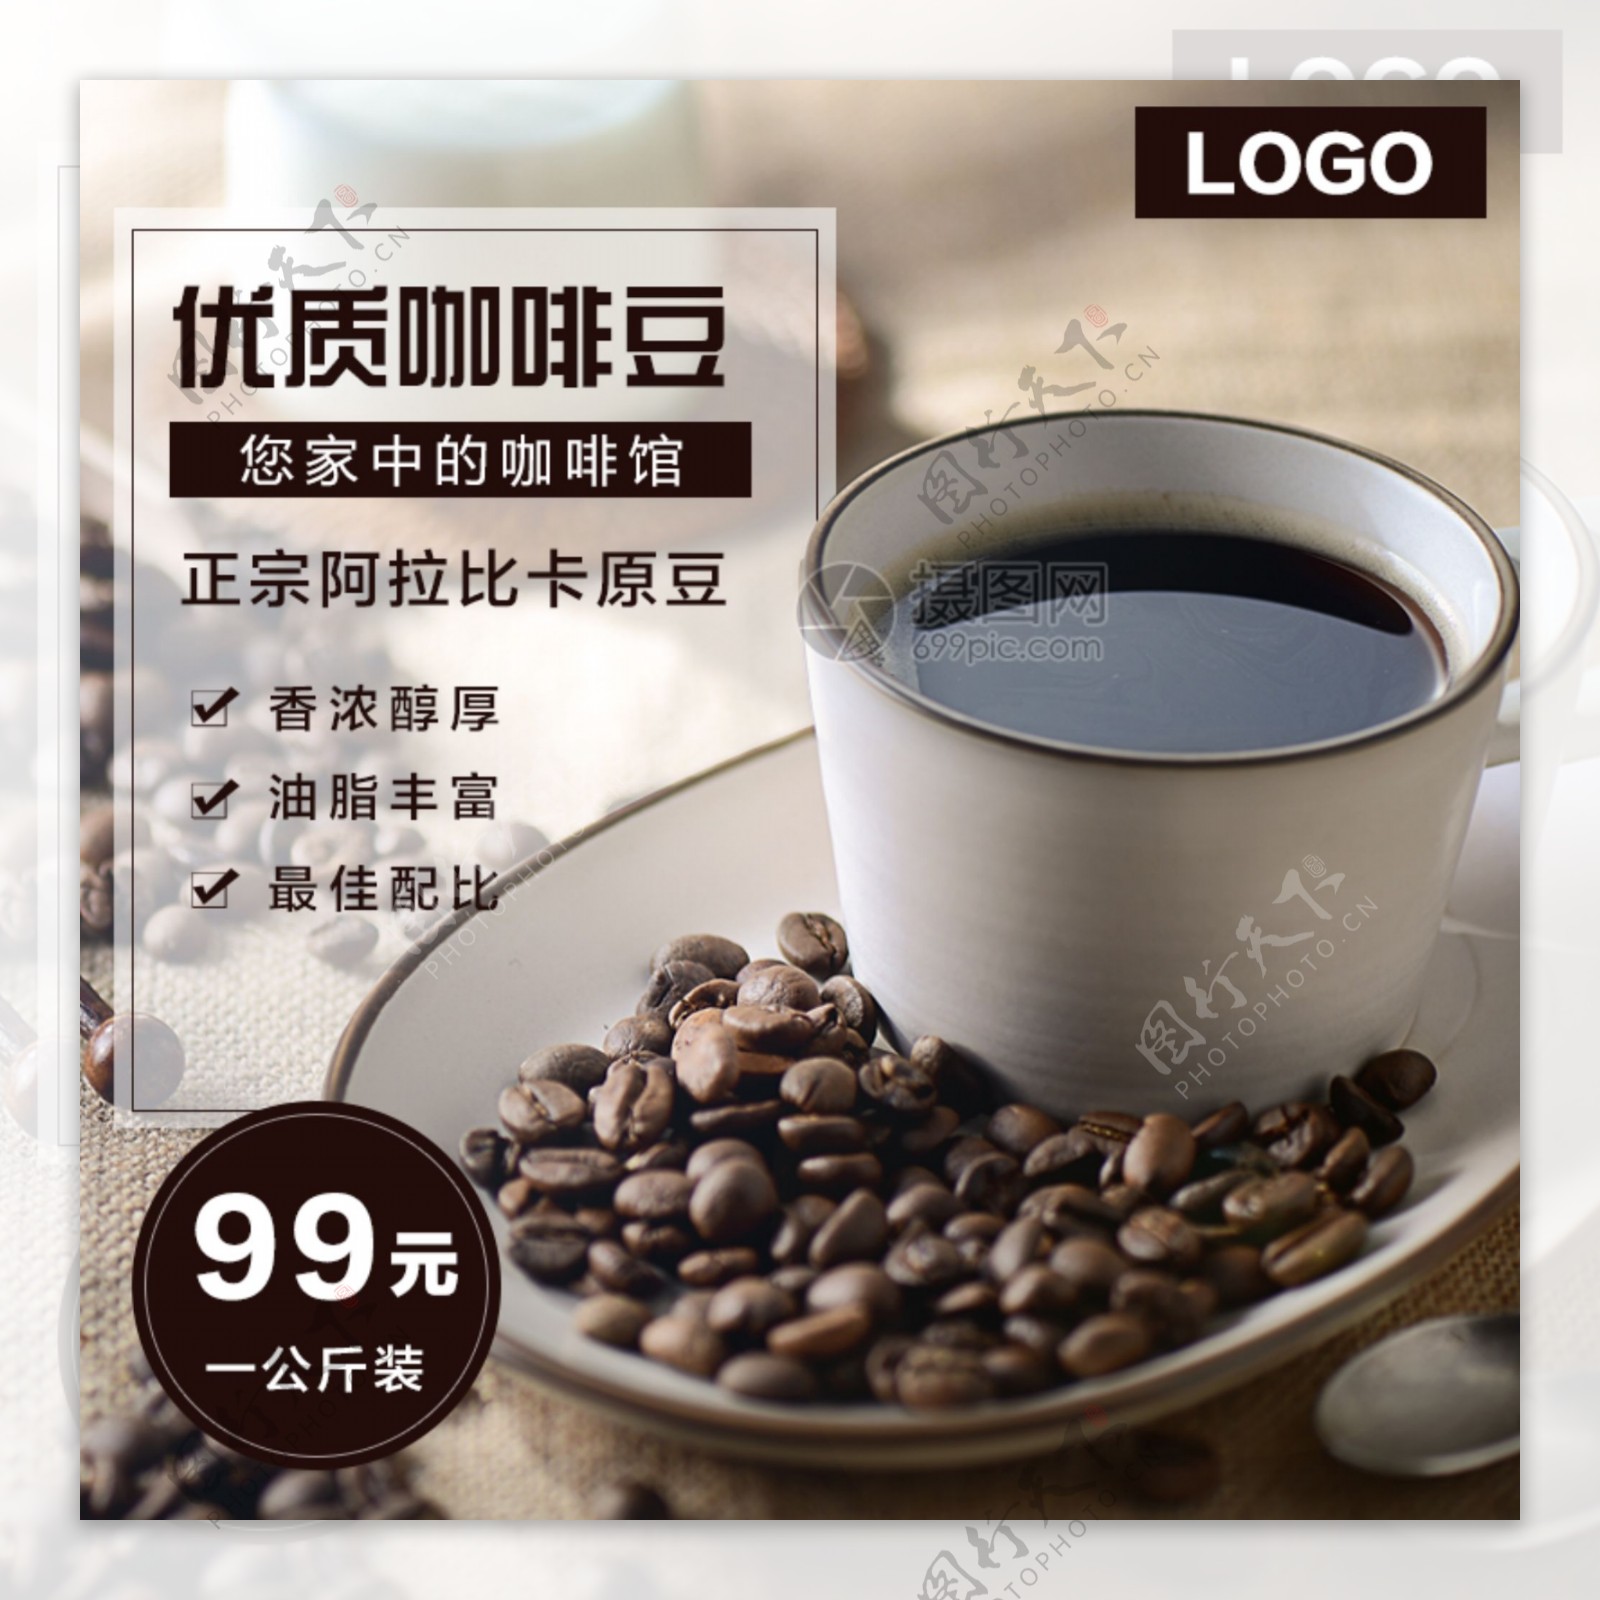 咖啡豆促销淘宝主图